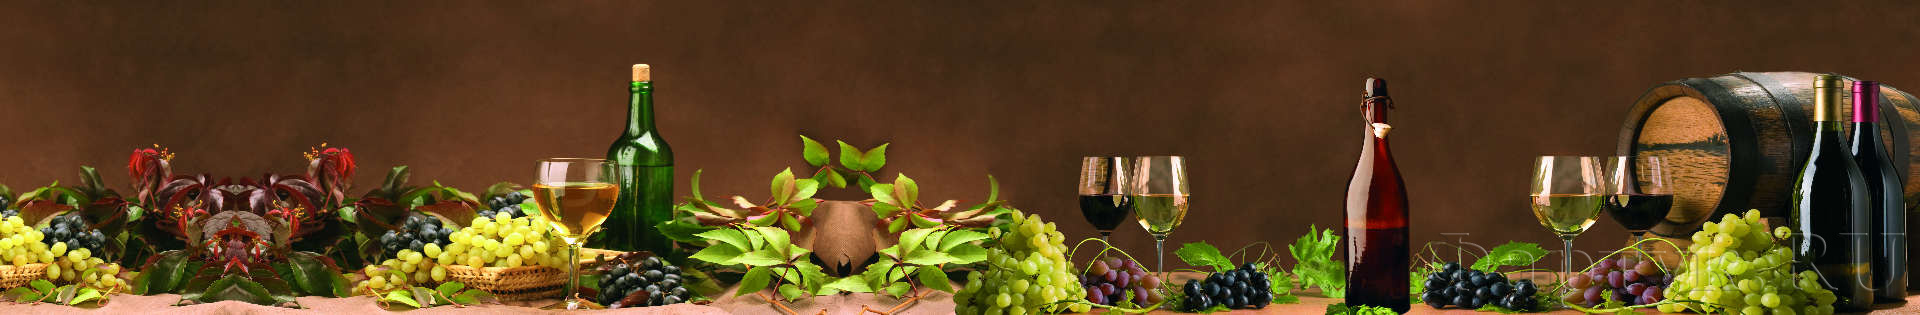 Вино, винные бутылки, виноград